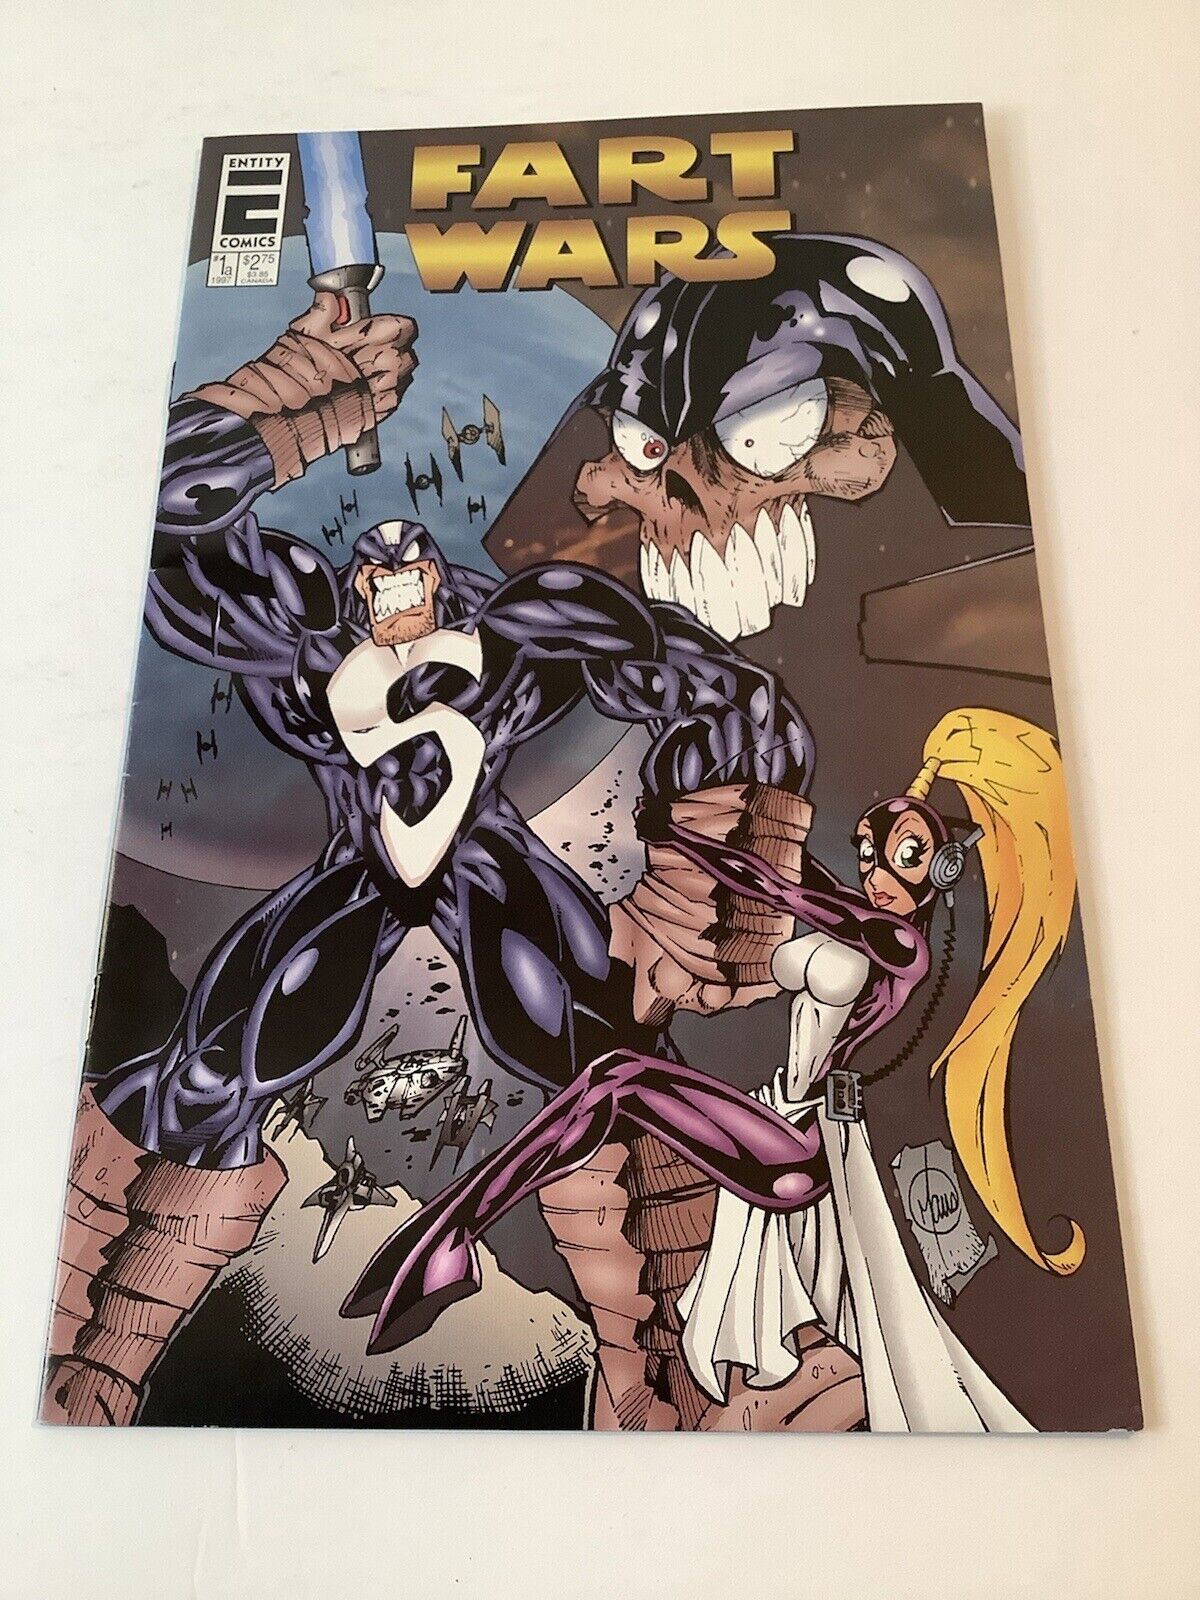 Fart Wars #1 Comic Book (1997 Entity Comics) Star Wars Parody